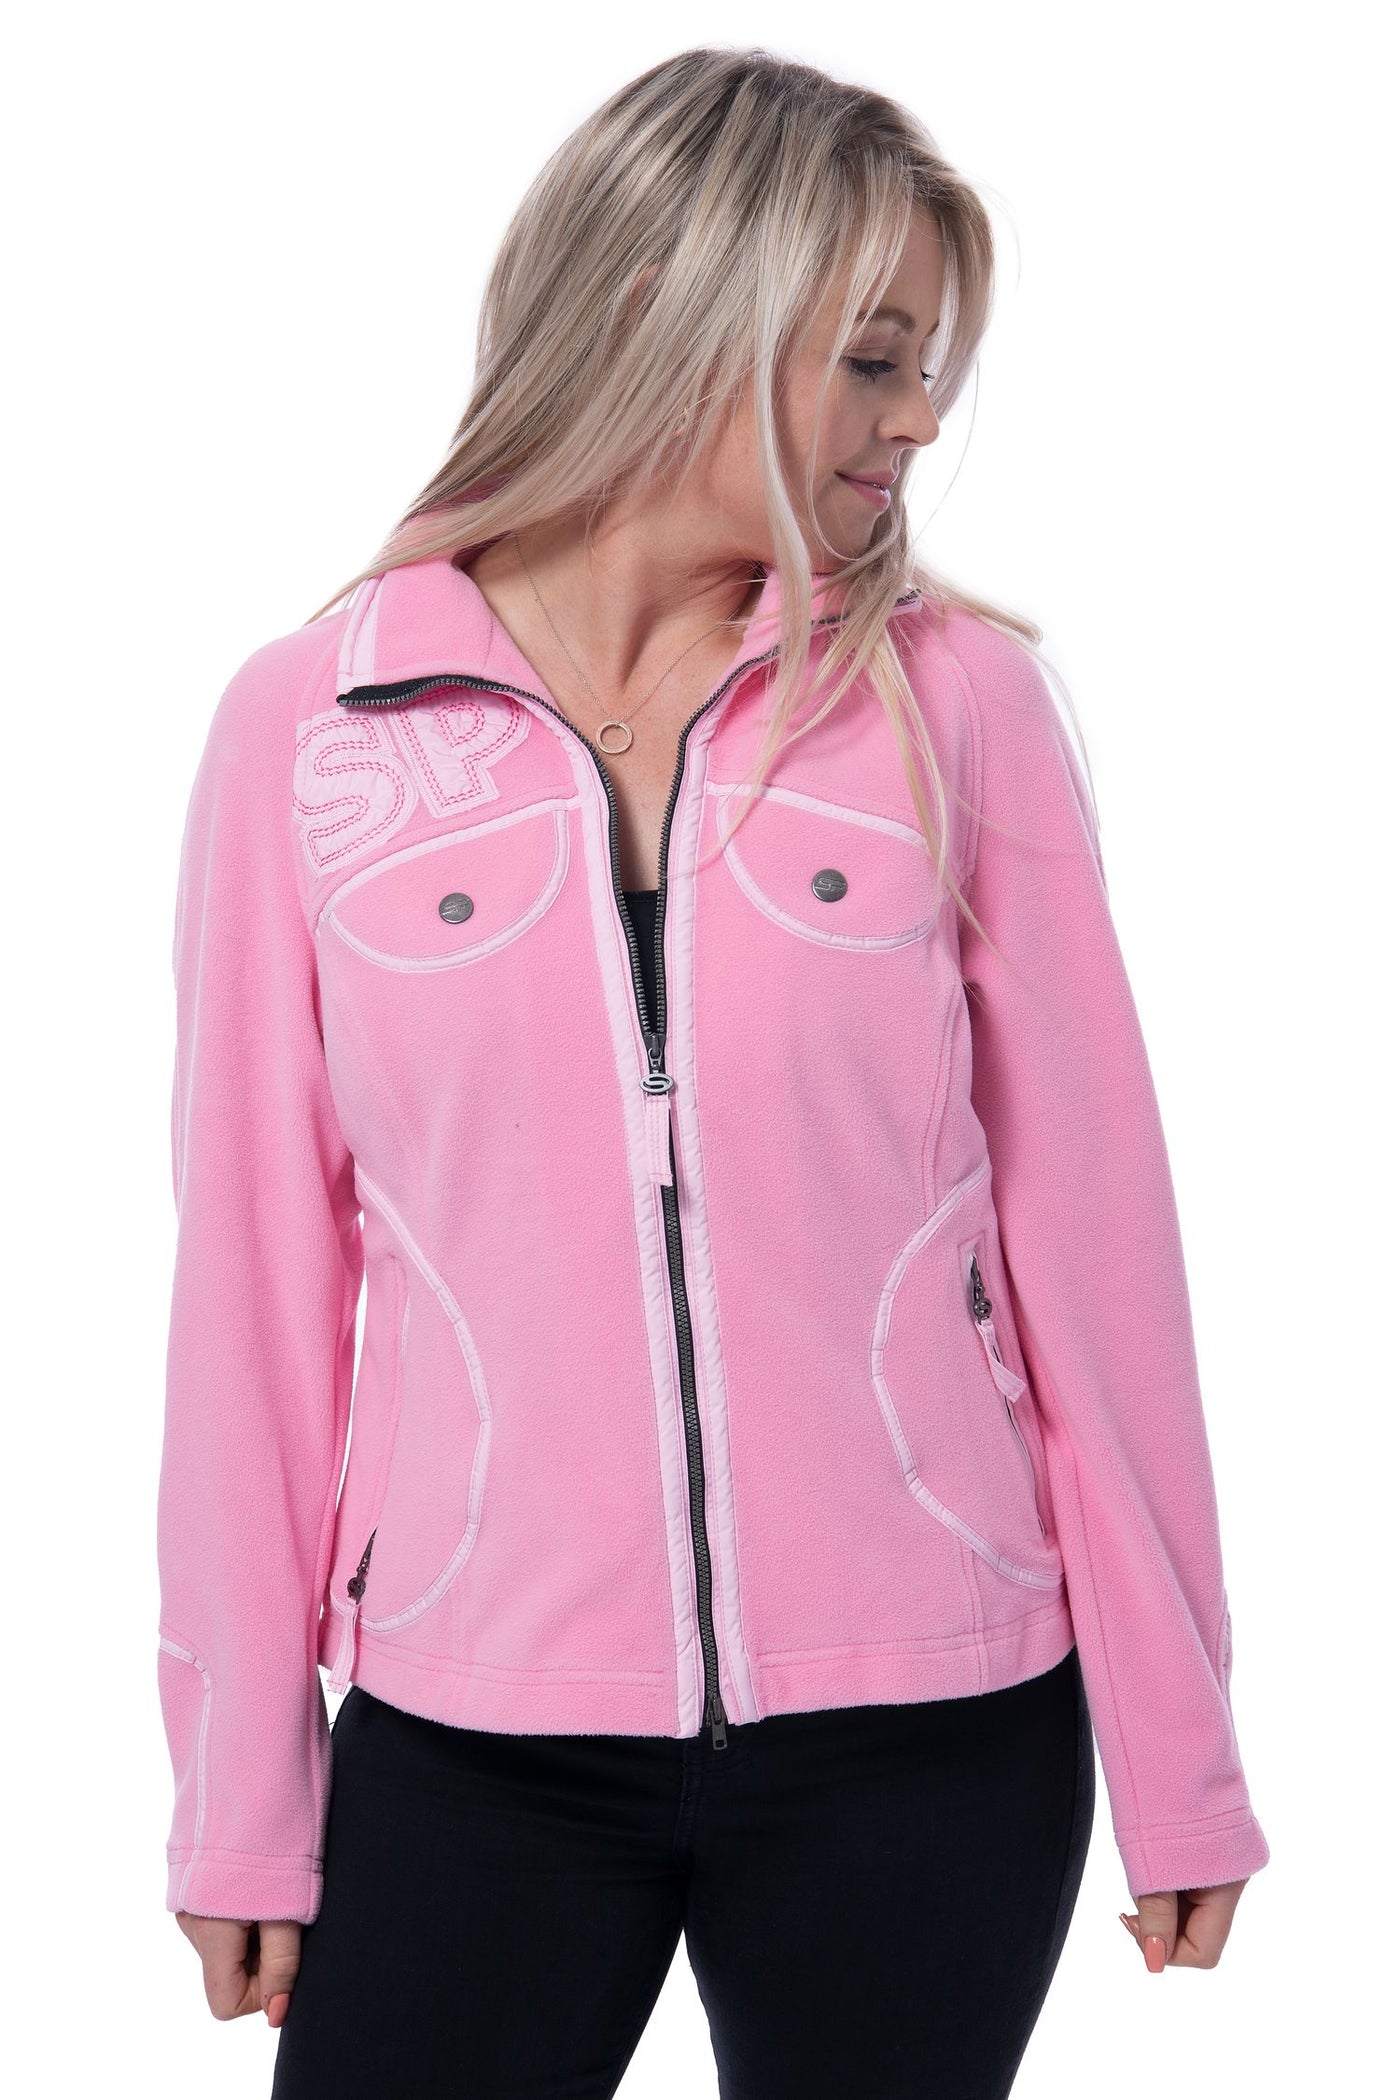 Sportalm pink fleece zip up jumper